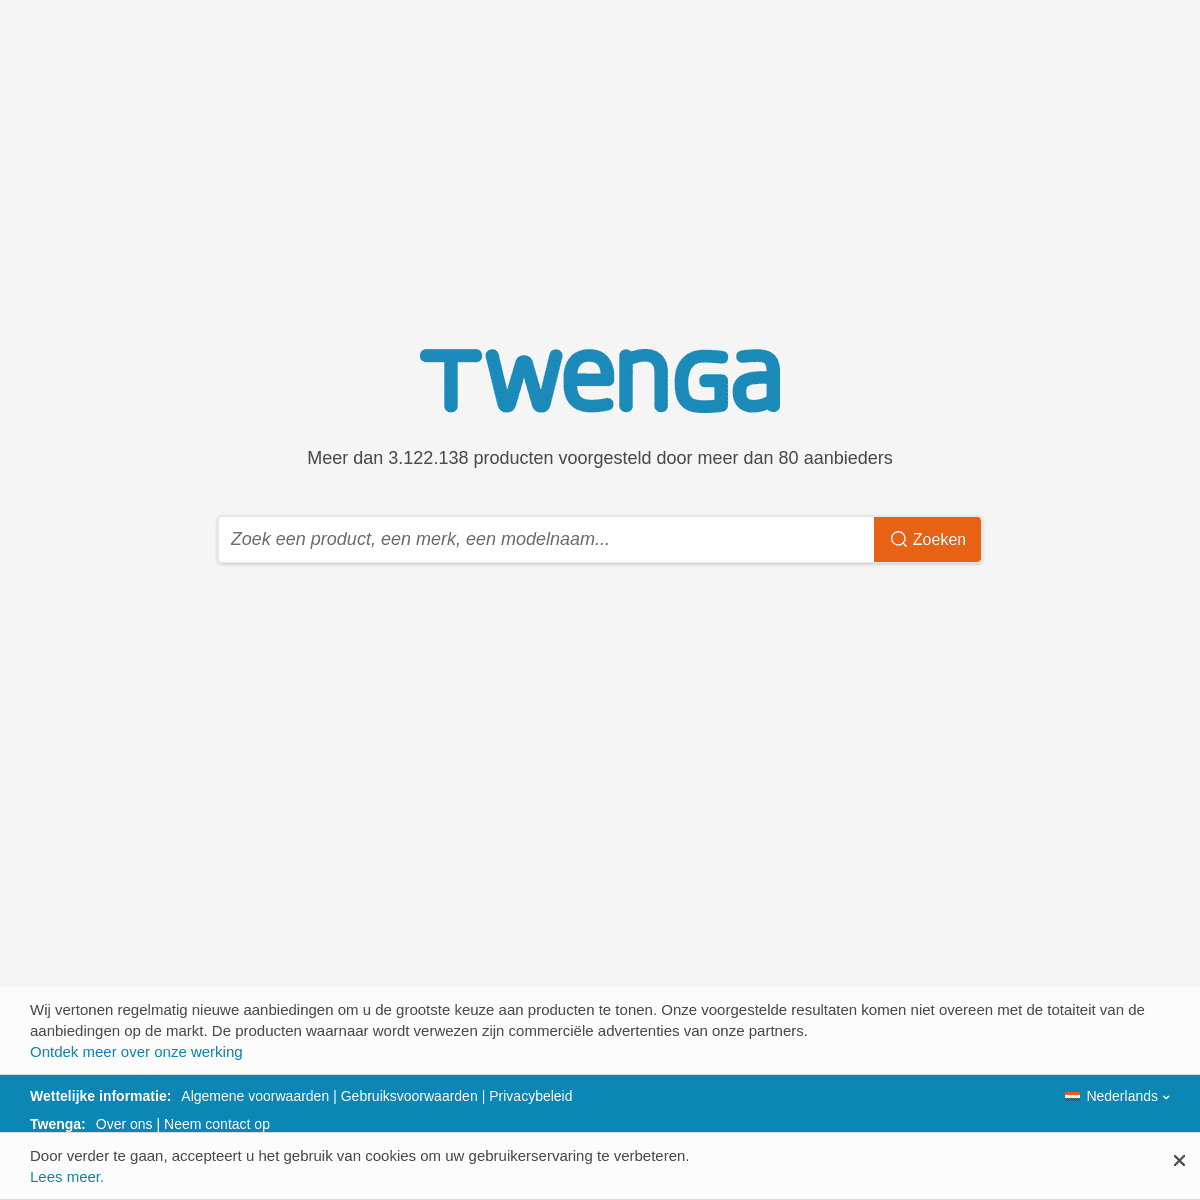 A complete backup of twenga.nl